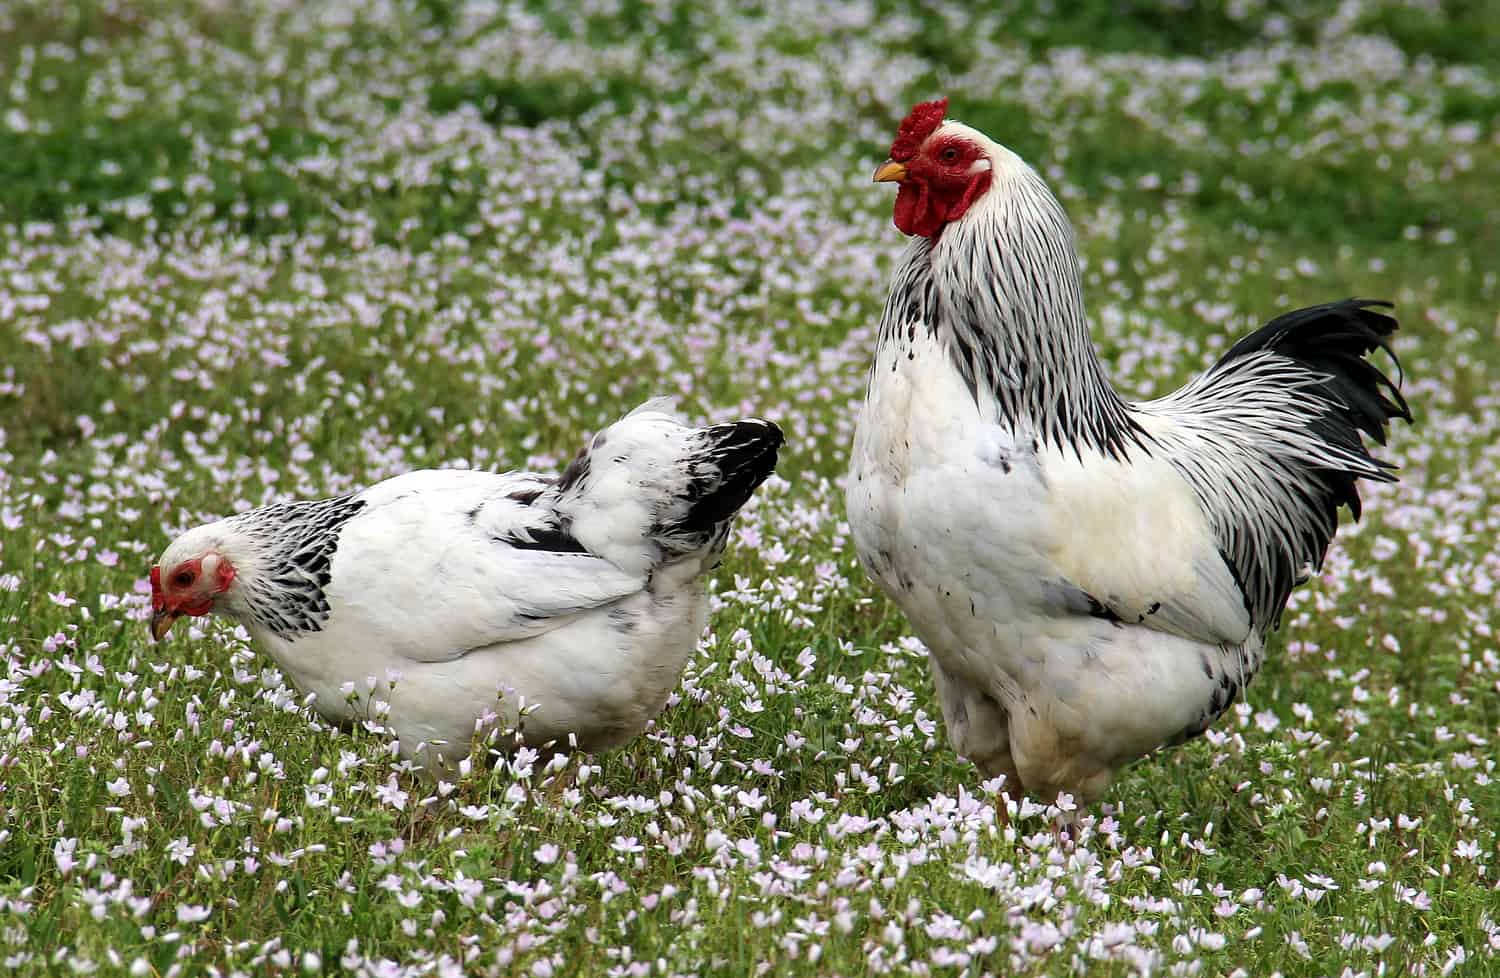 Brahma Chickens